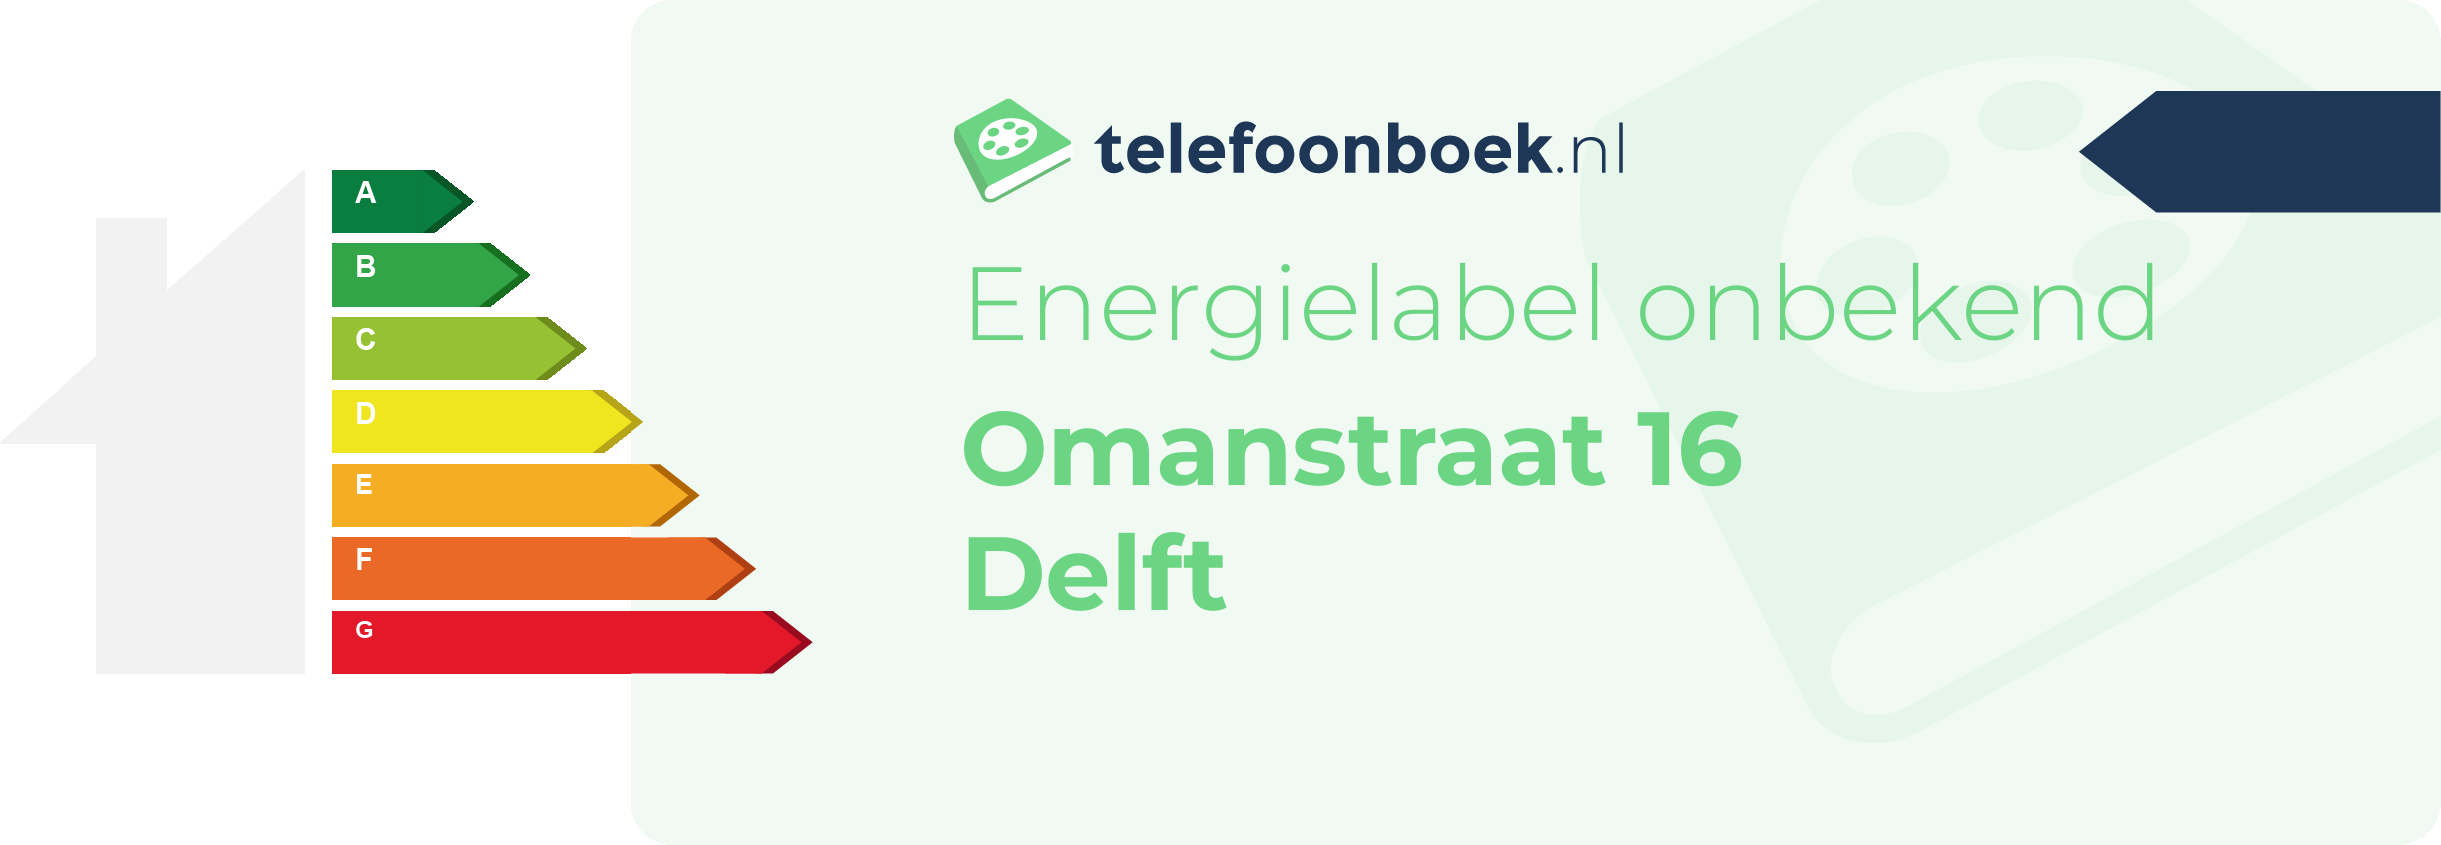 Energielabel Omanstraat 16 Delft